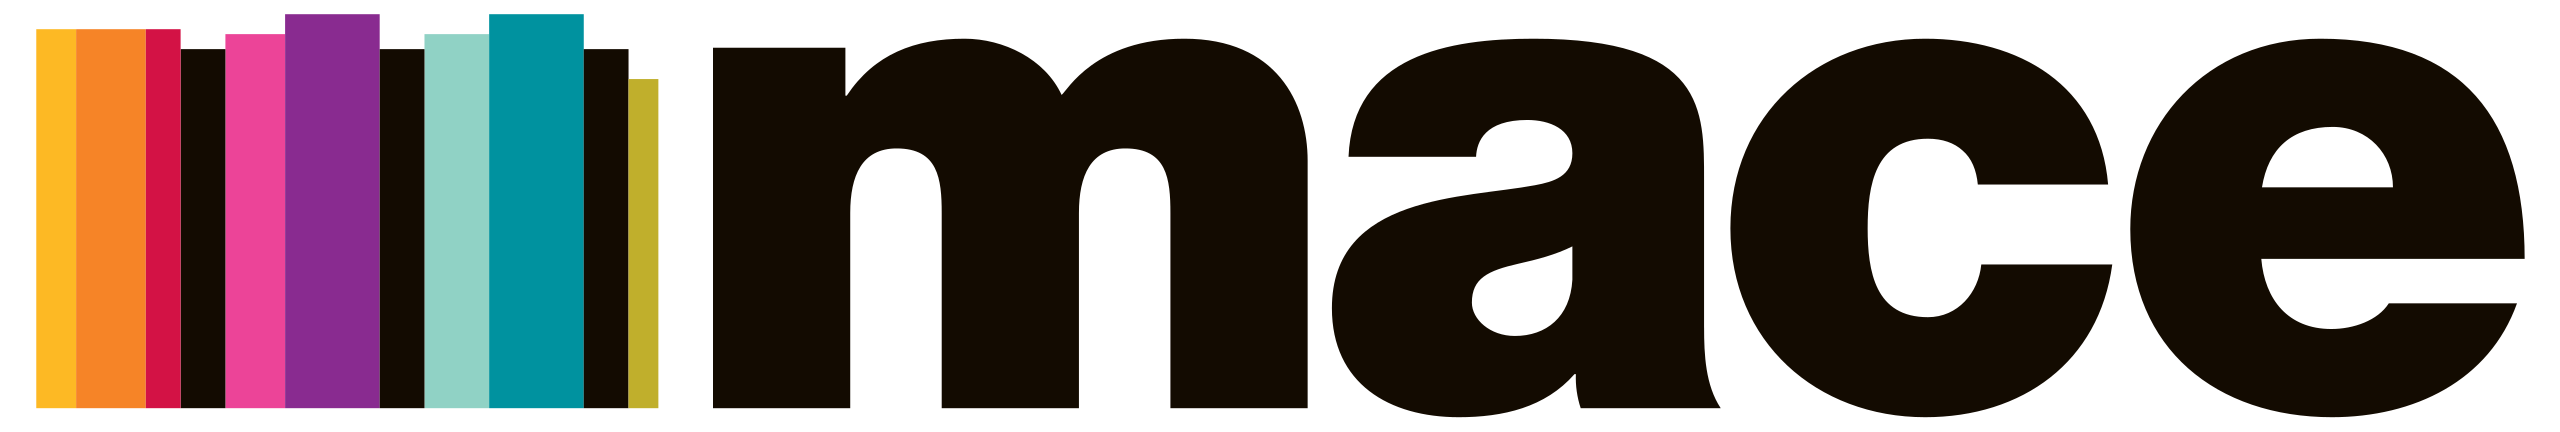 Mace_Group_logo.svg